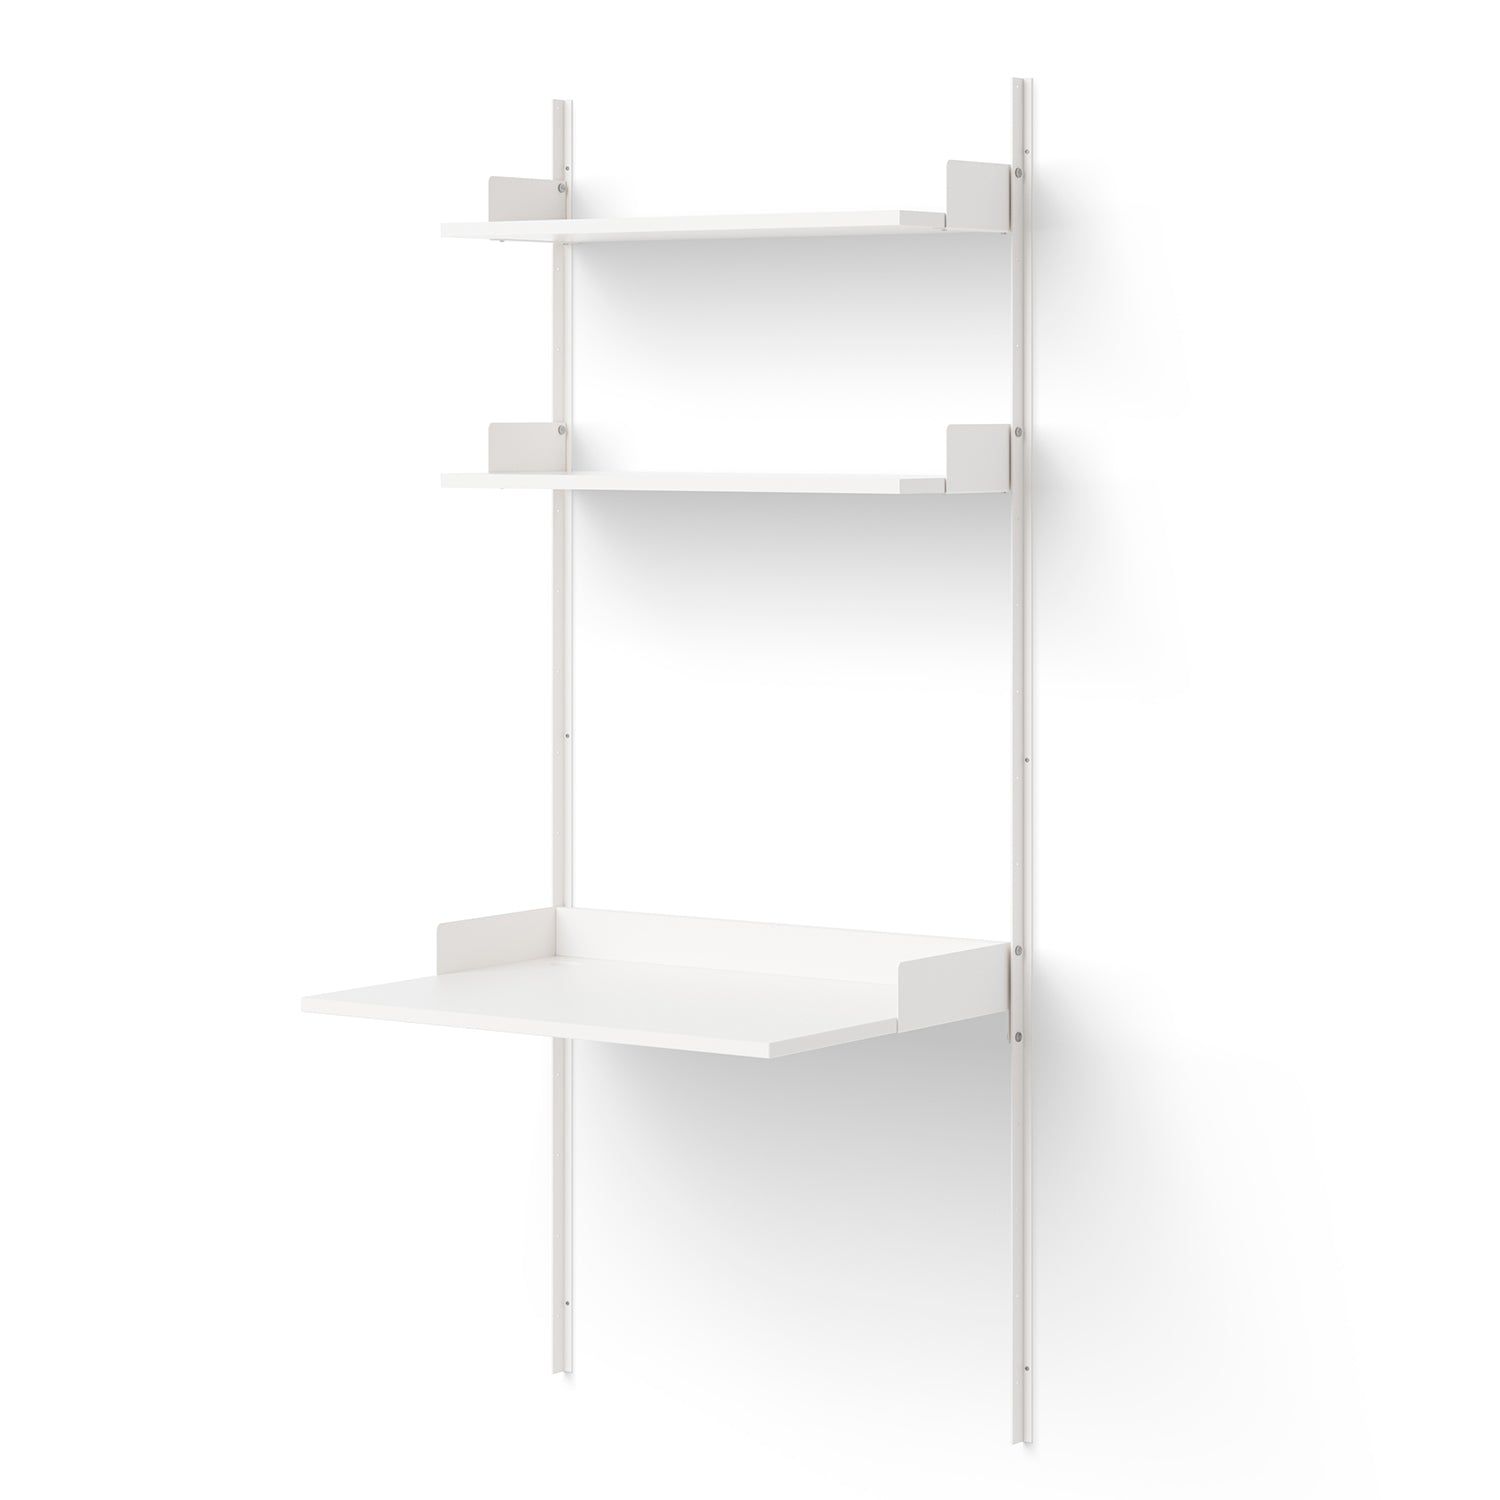 Study Shelf - The Design Choice